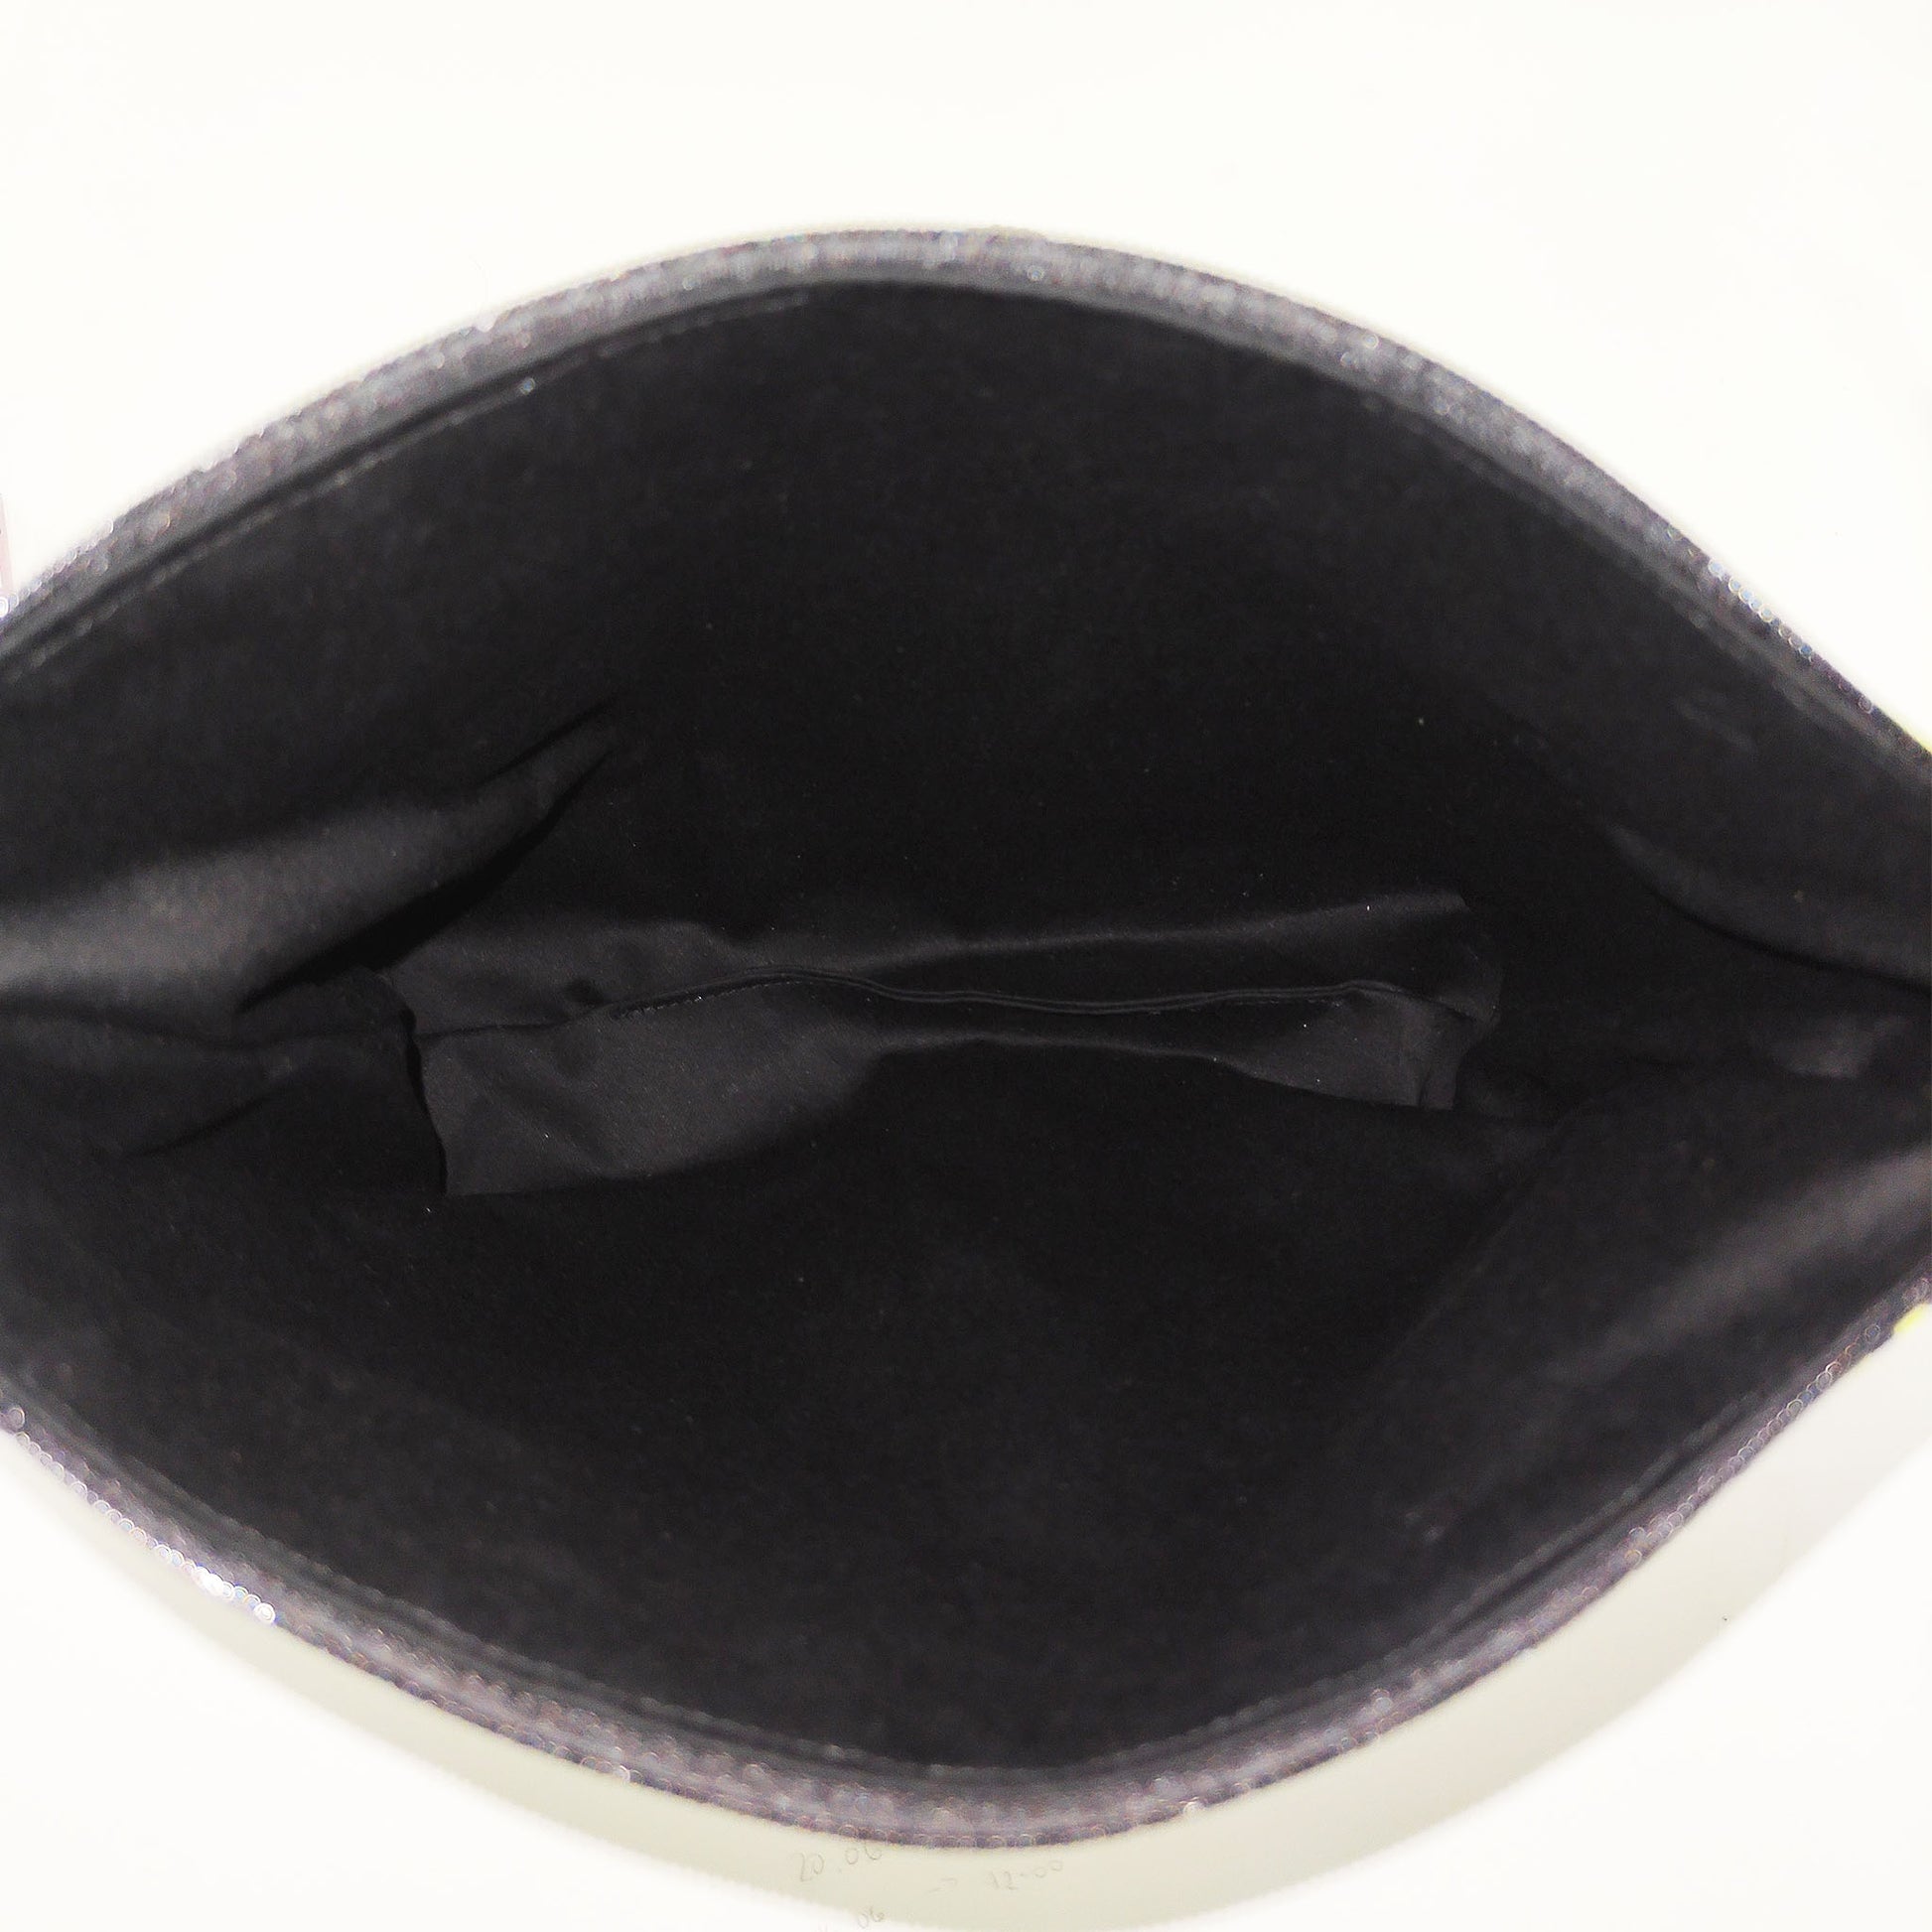 Handgefertigtes Täschchen in Rosatönen mit Gehirnmotiv. Perfekt für deinen Kleinkram und praktisch, da es in jede Tasche passt. Mit schwarzen Futterstoff.